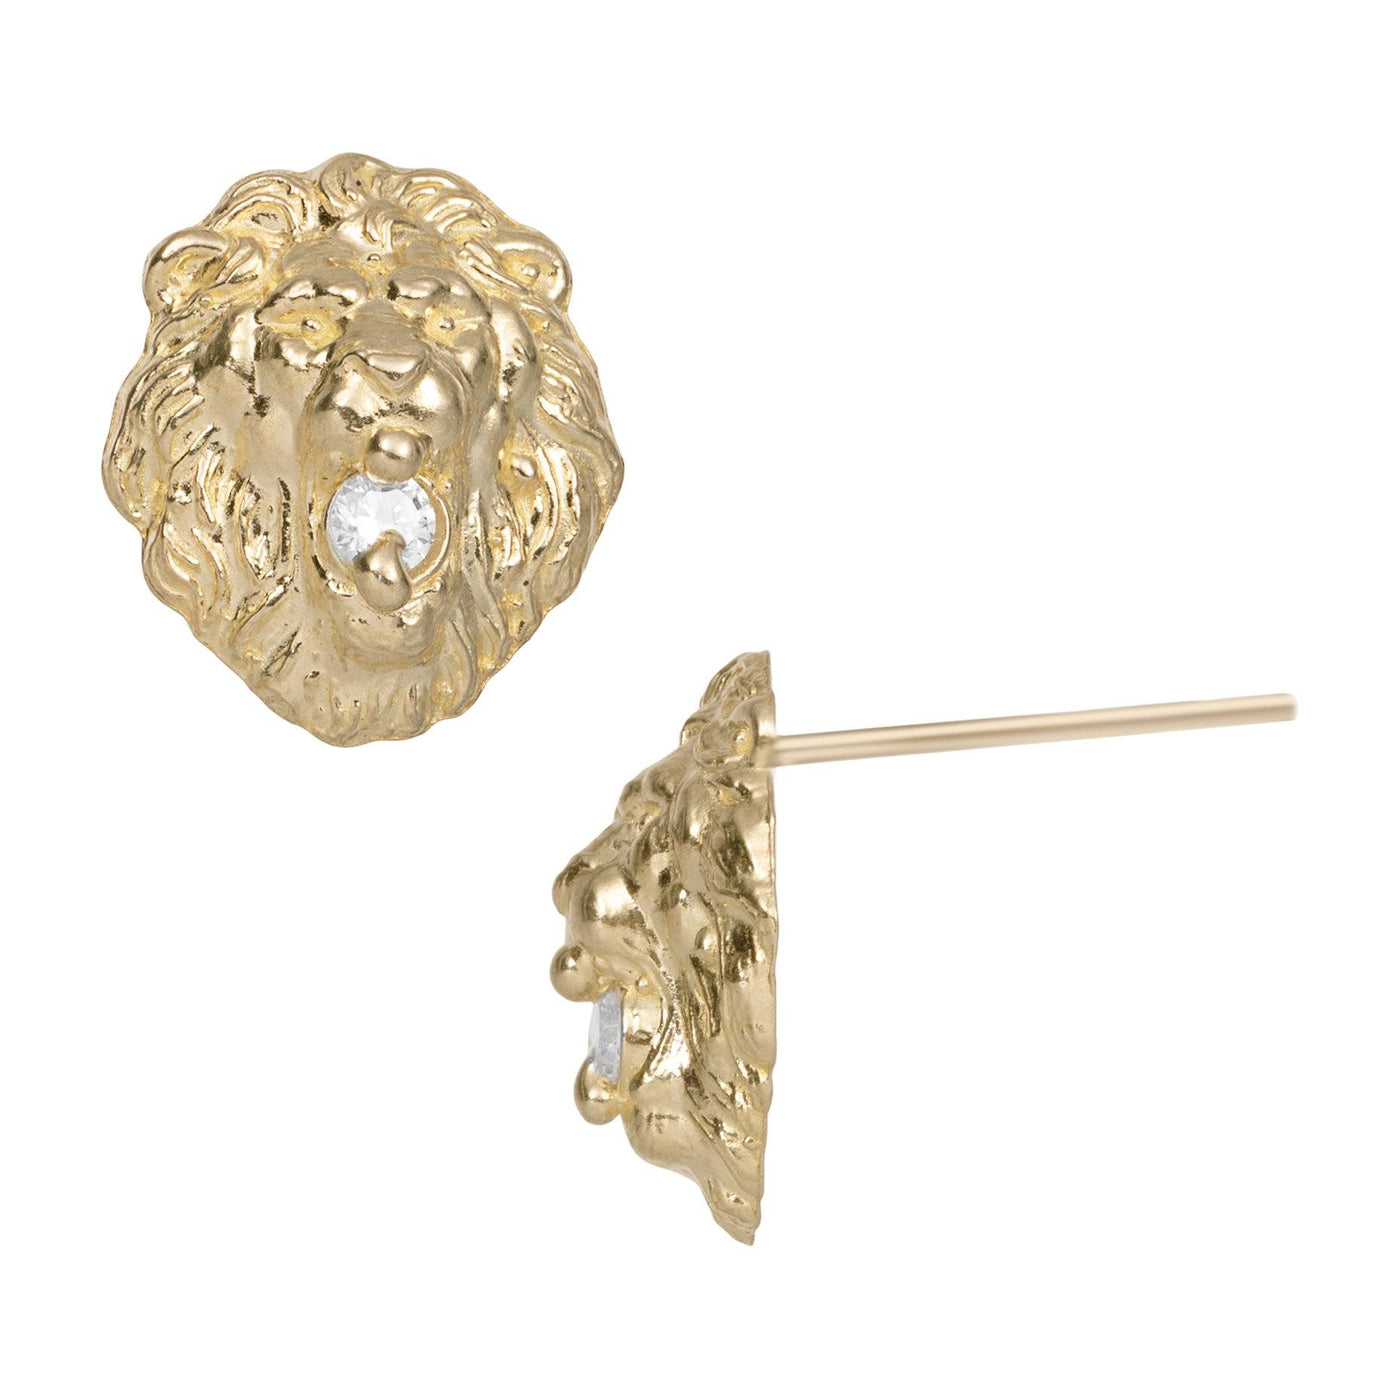 1/2" Women's Roaring Lion Head CZ Stud Earrings Solid 10K Yellow Gold - bayamjewelry